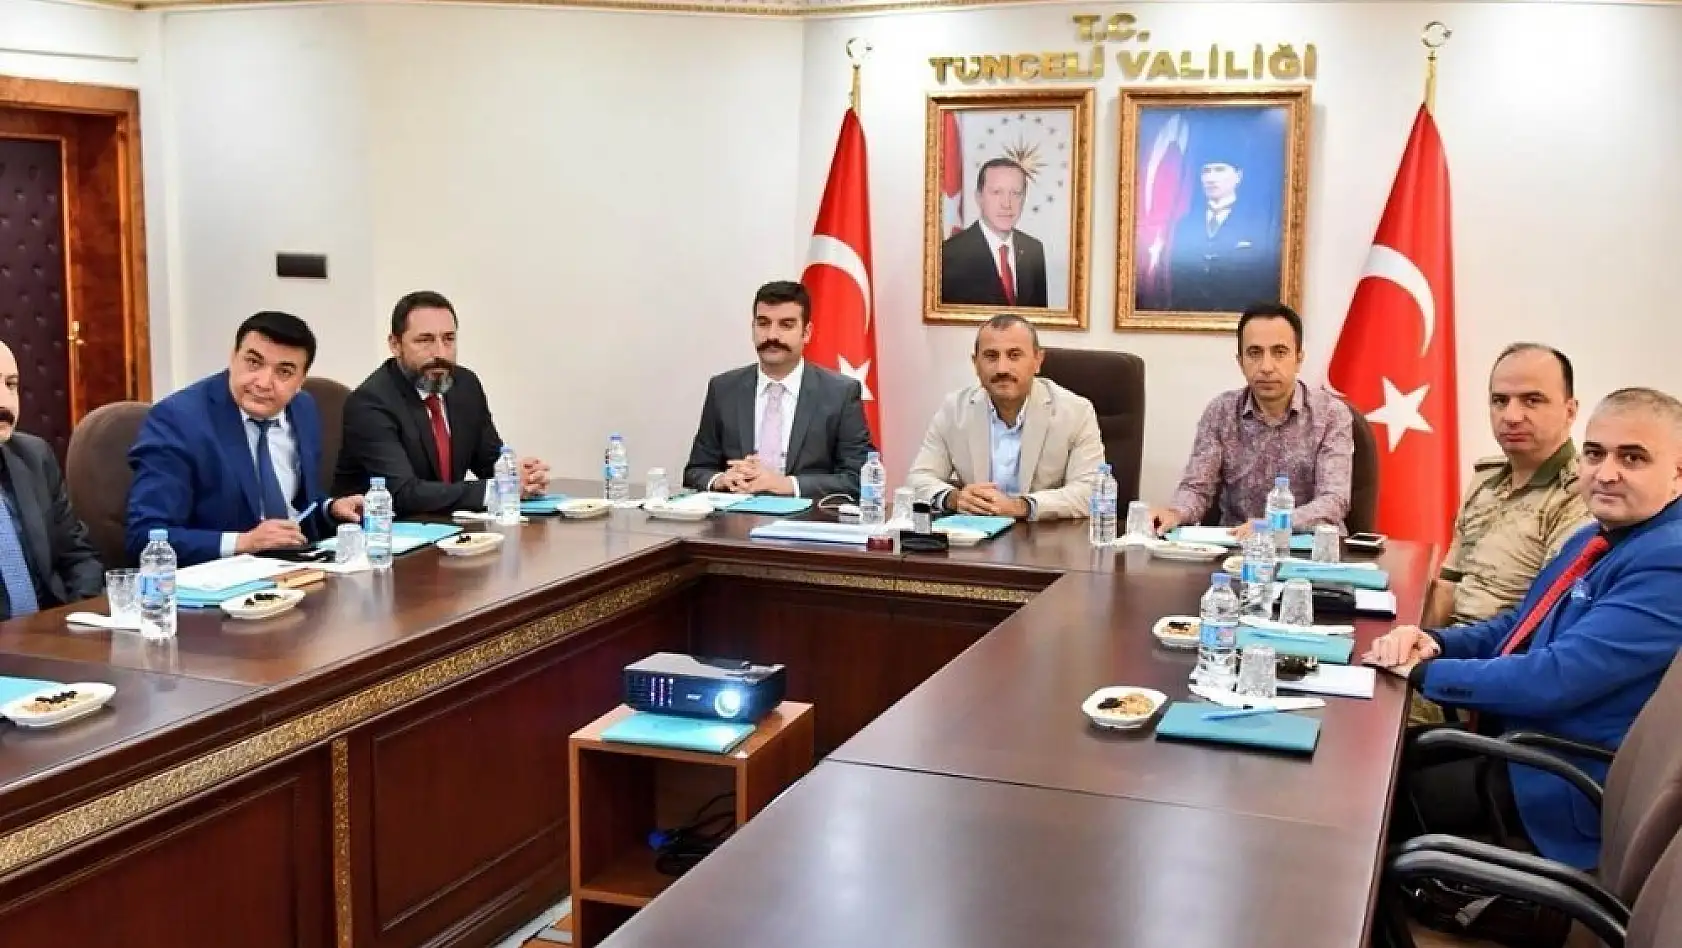 Tunceli'de Spor Güvenliği ve Üniversite Güvenlik Toplantıları 